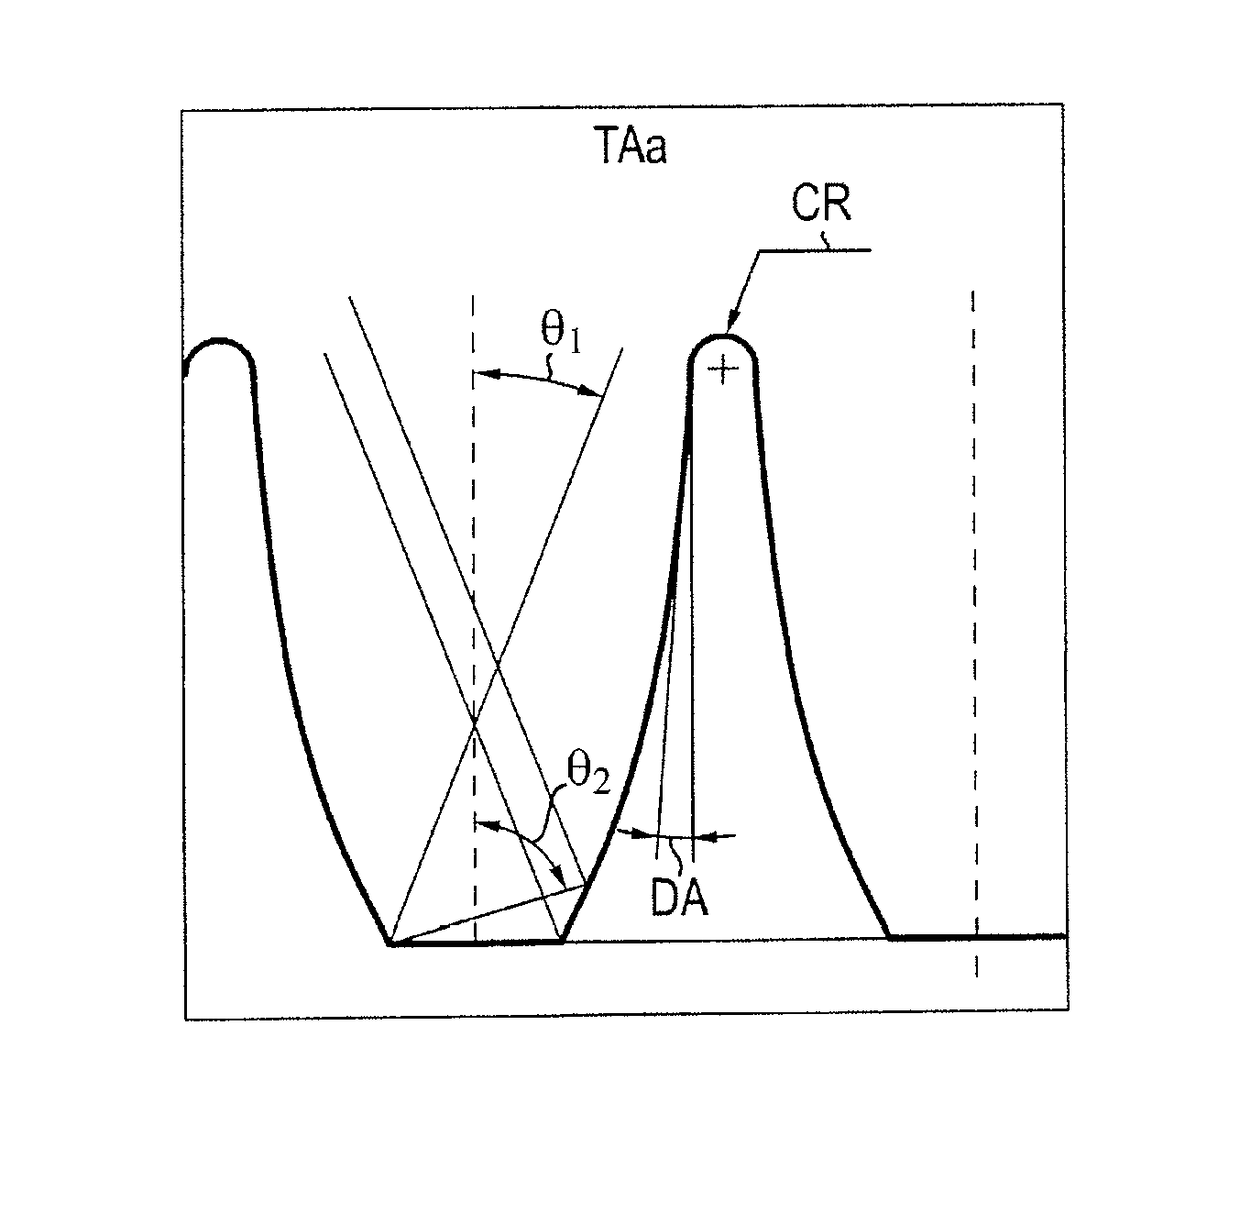 Gamma ray scintillation detector preserving the original scintillation light distribution